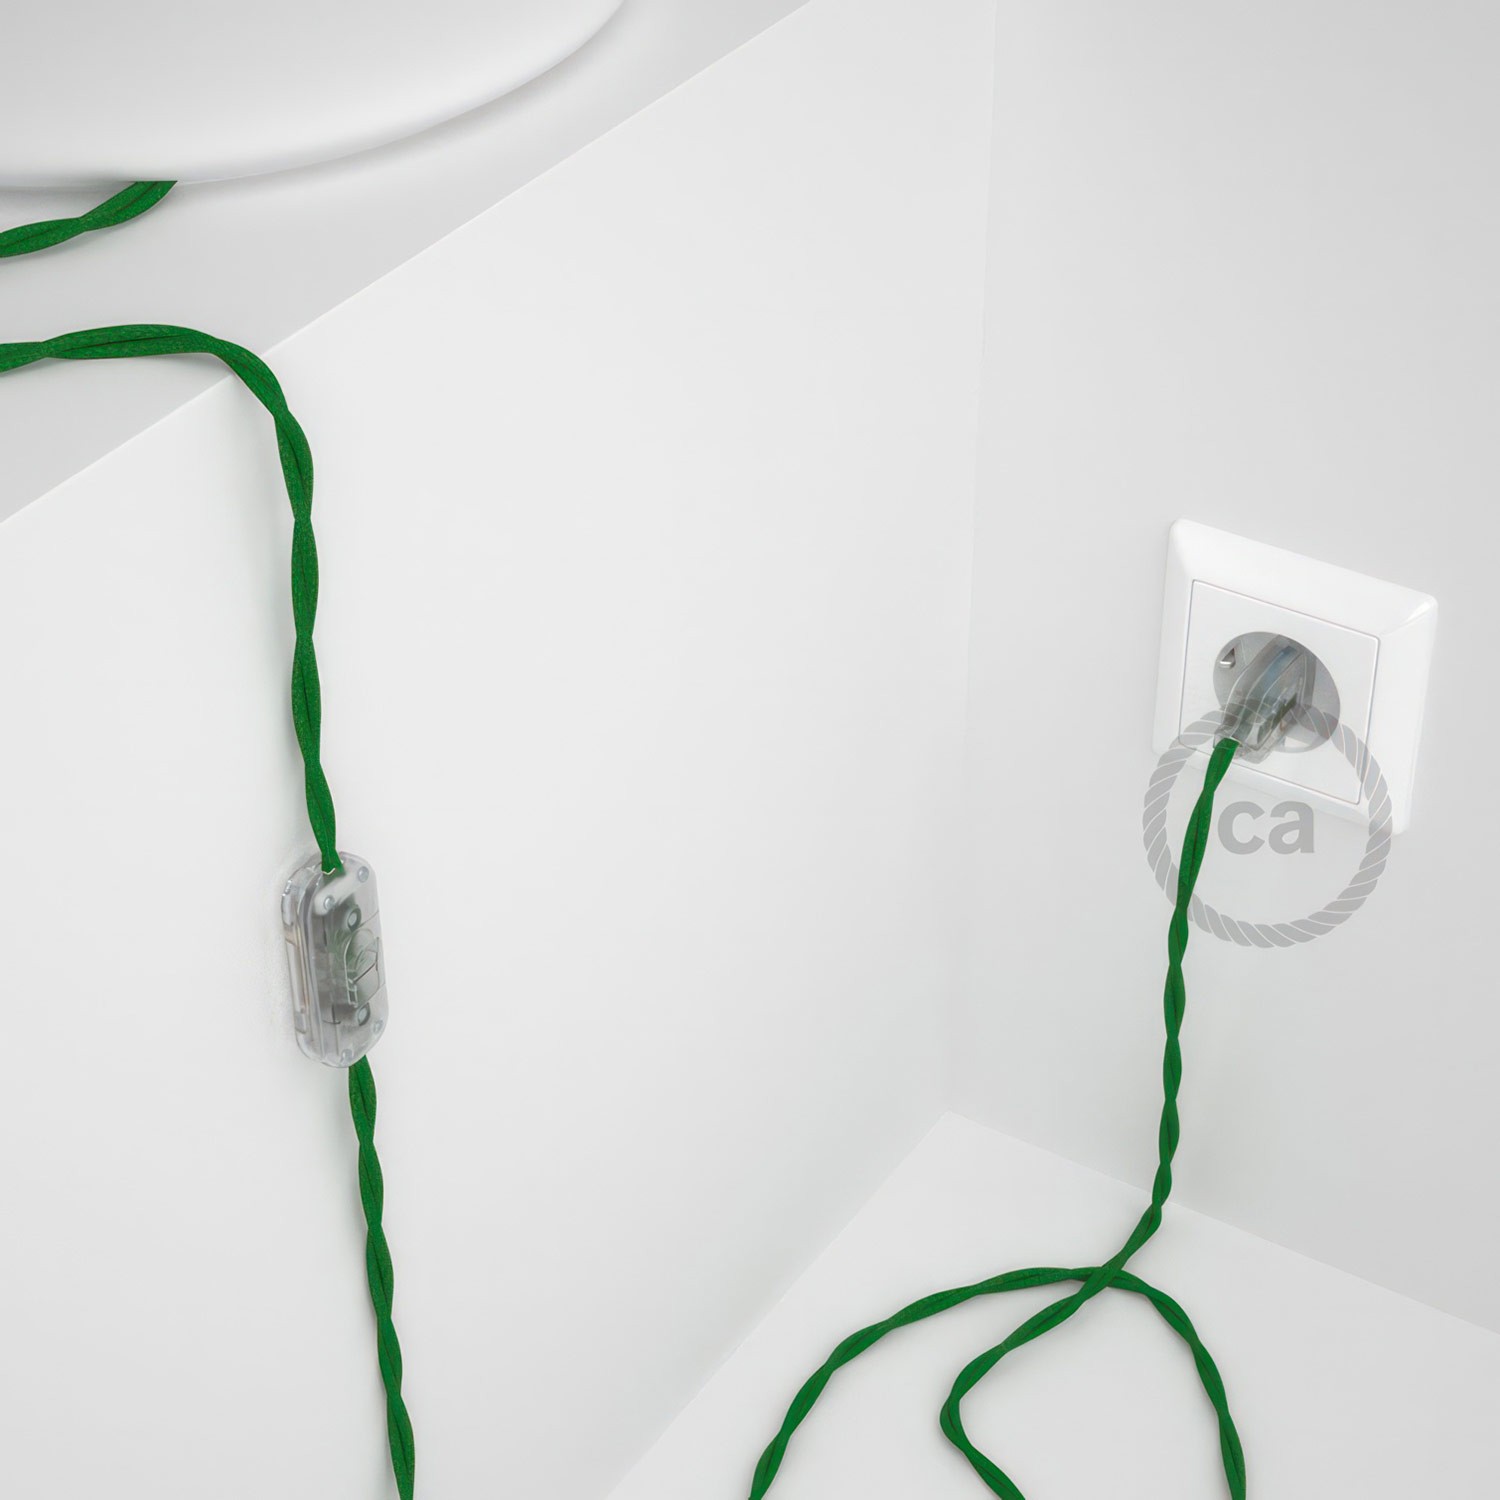 Cableado para lámpara, cable TM06 Efecto Seda Verde 1,8m. Elige tu el color de la clavija y del interruptor!